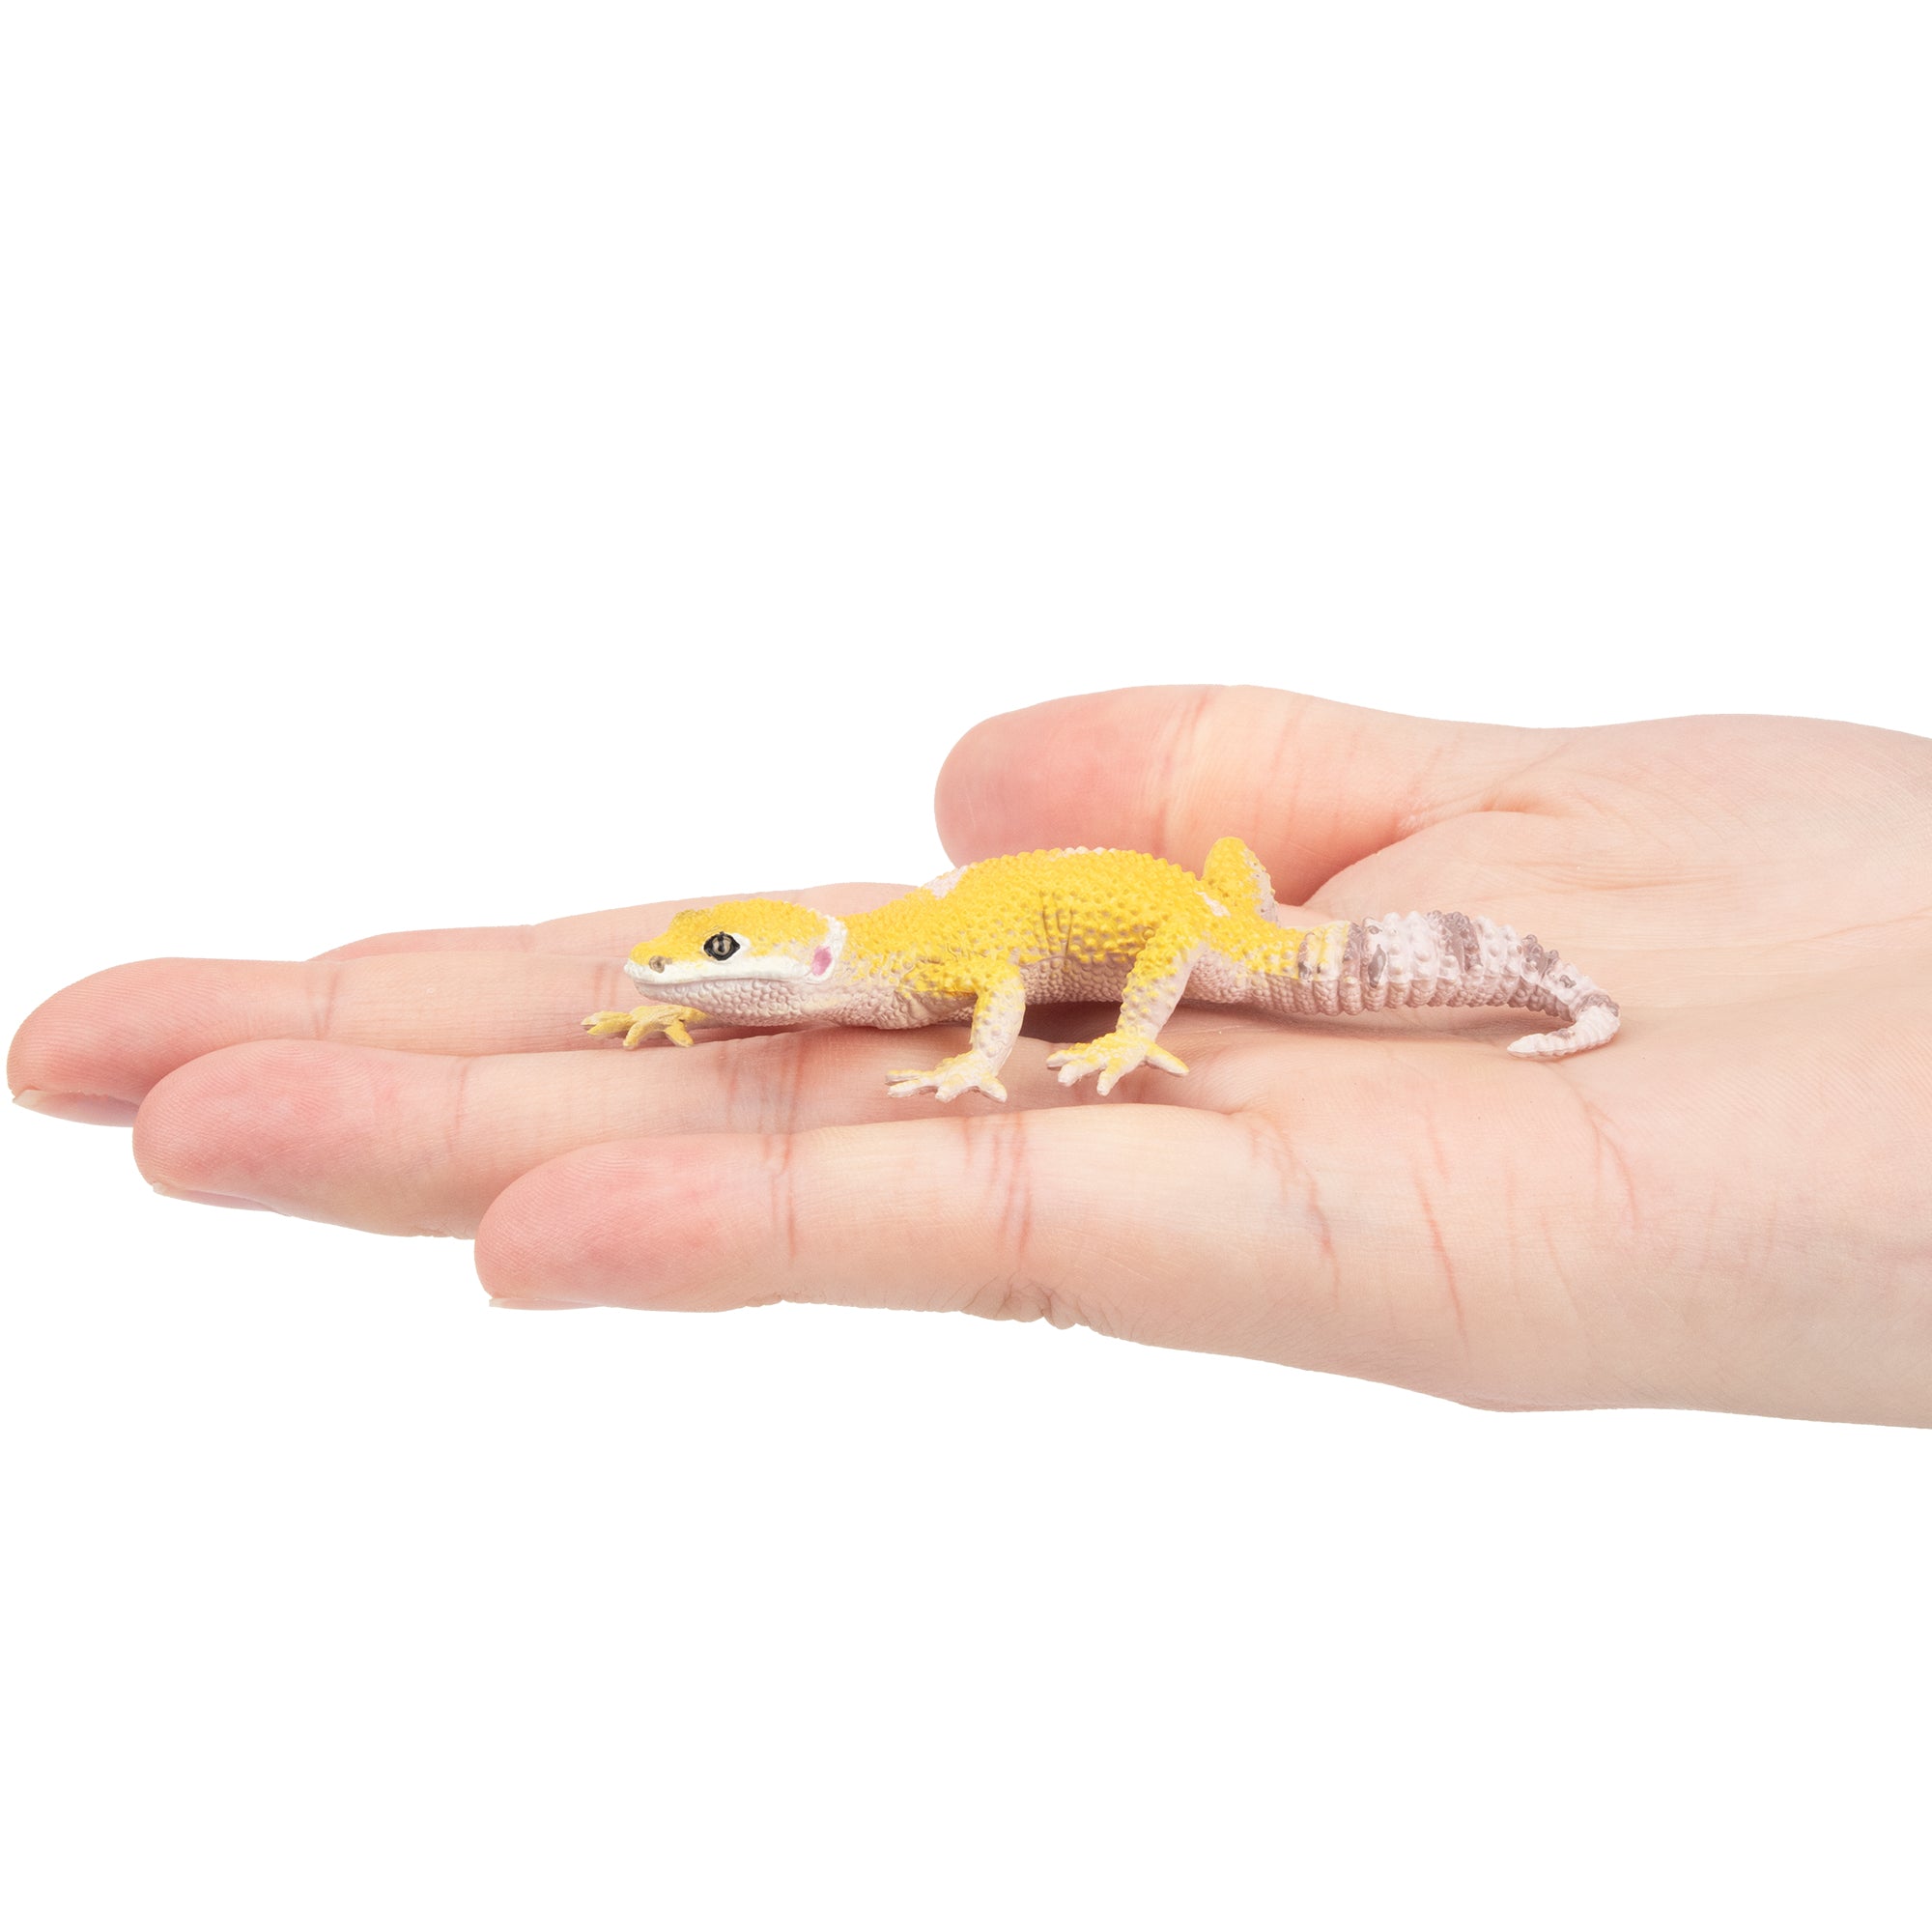 Toymany Gecko Figurine Toy-on hand